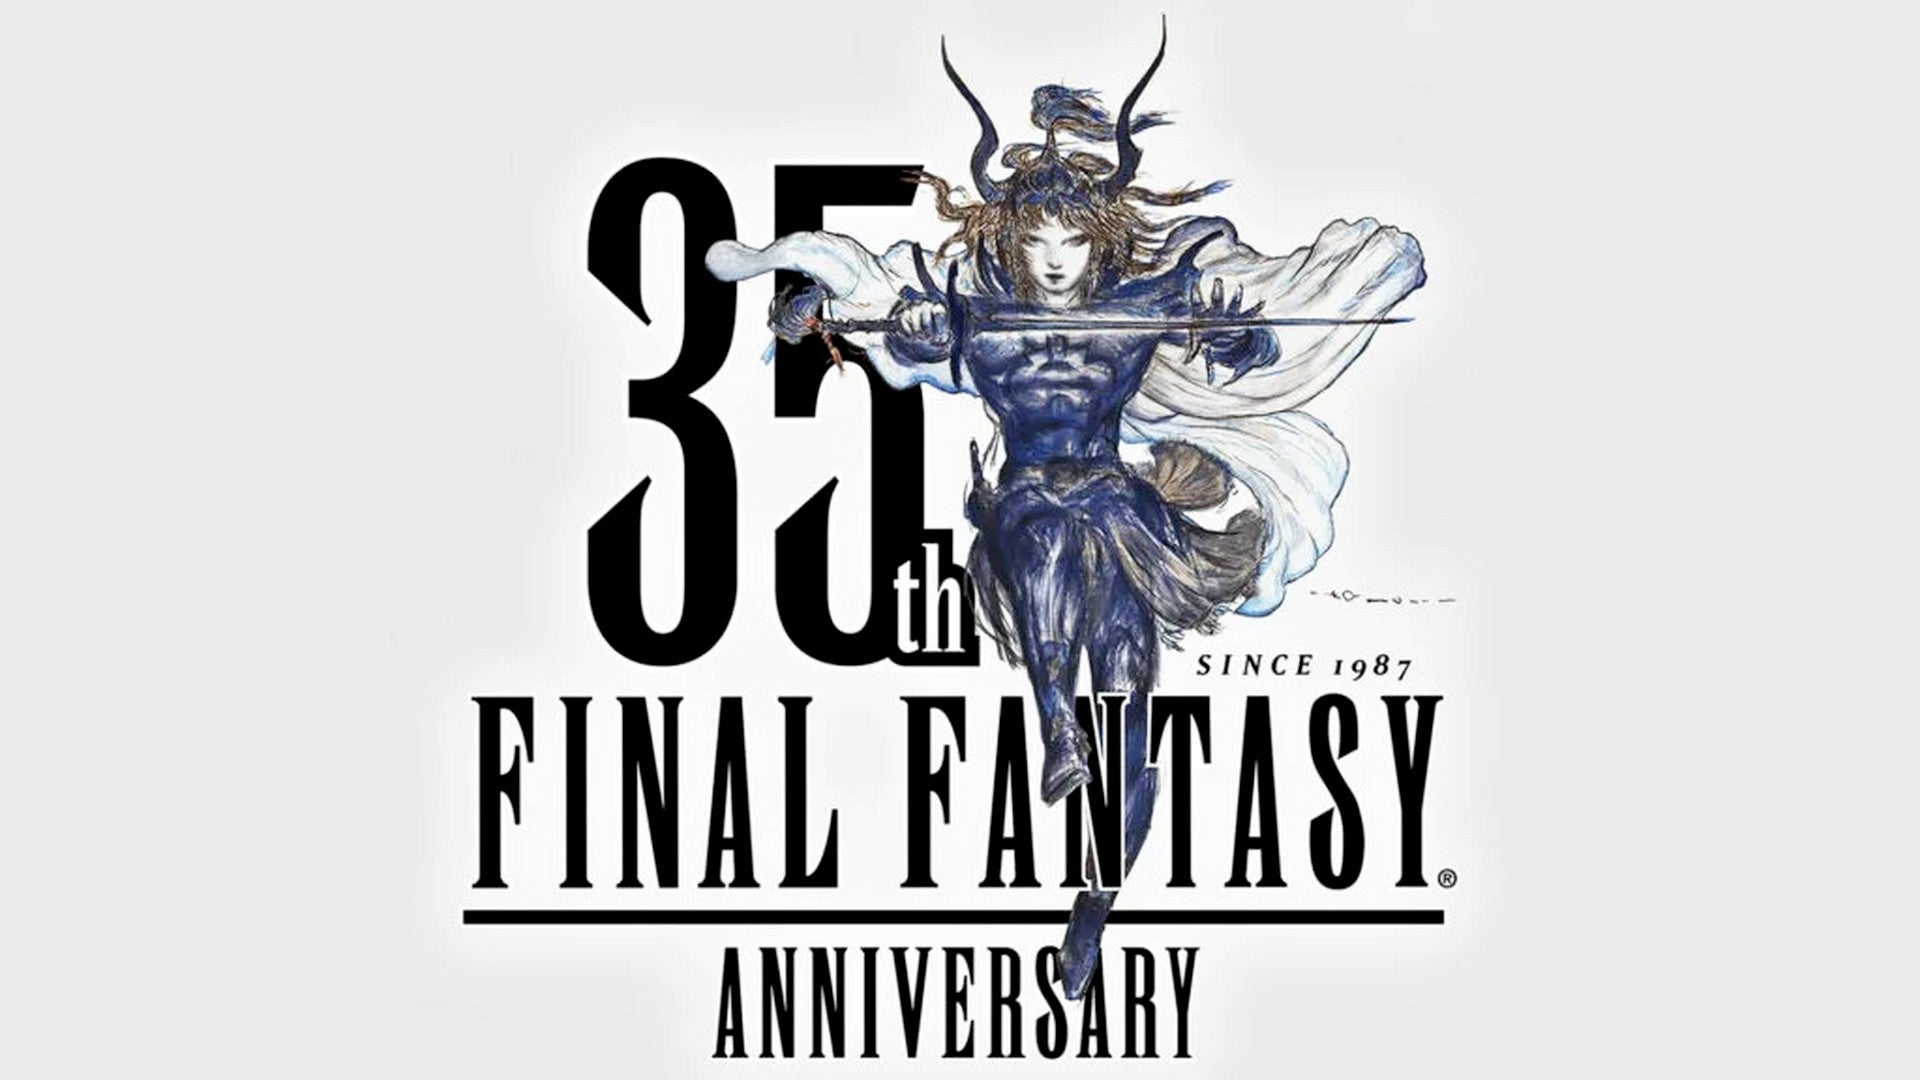 Bilder zu Final Fantasy wird 35: Square Enix will das feiern, aber wie?